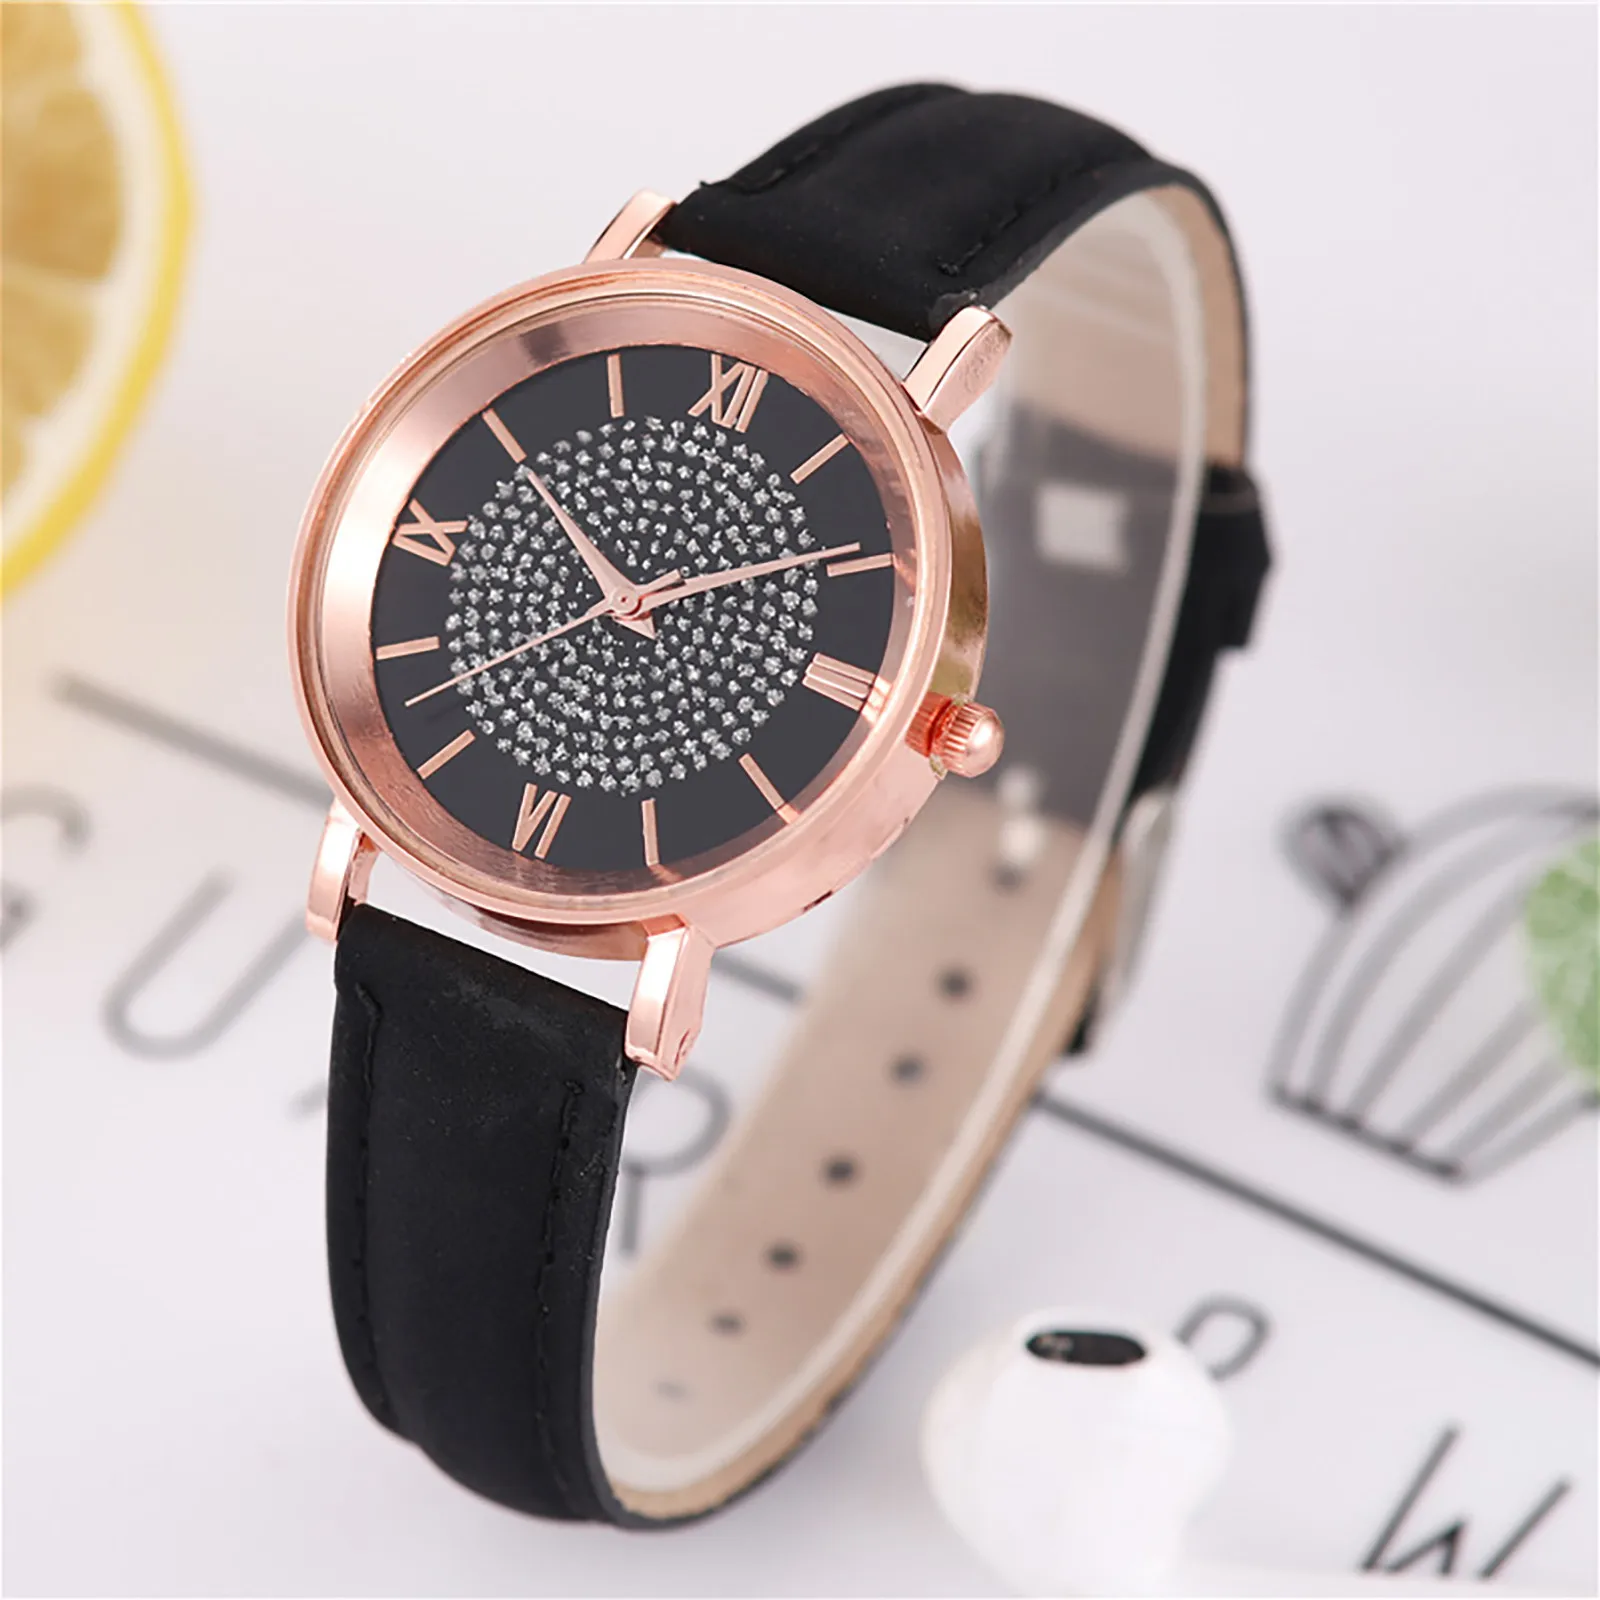 

Luxury Ladies Rhinestone Belt Watch Analog Arabic Digital Quartz Watches Fashion Casual Round Wrist Watches Montres Femmes